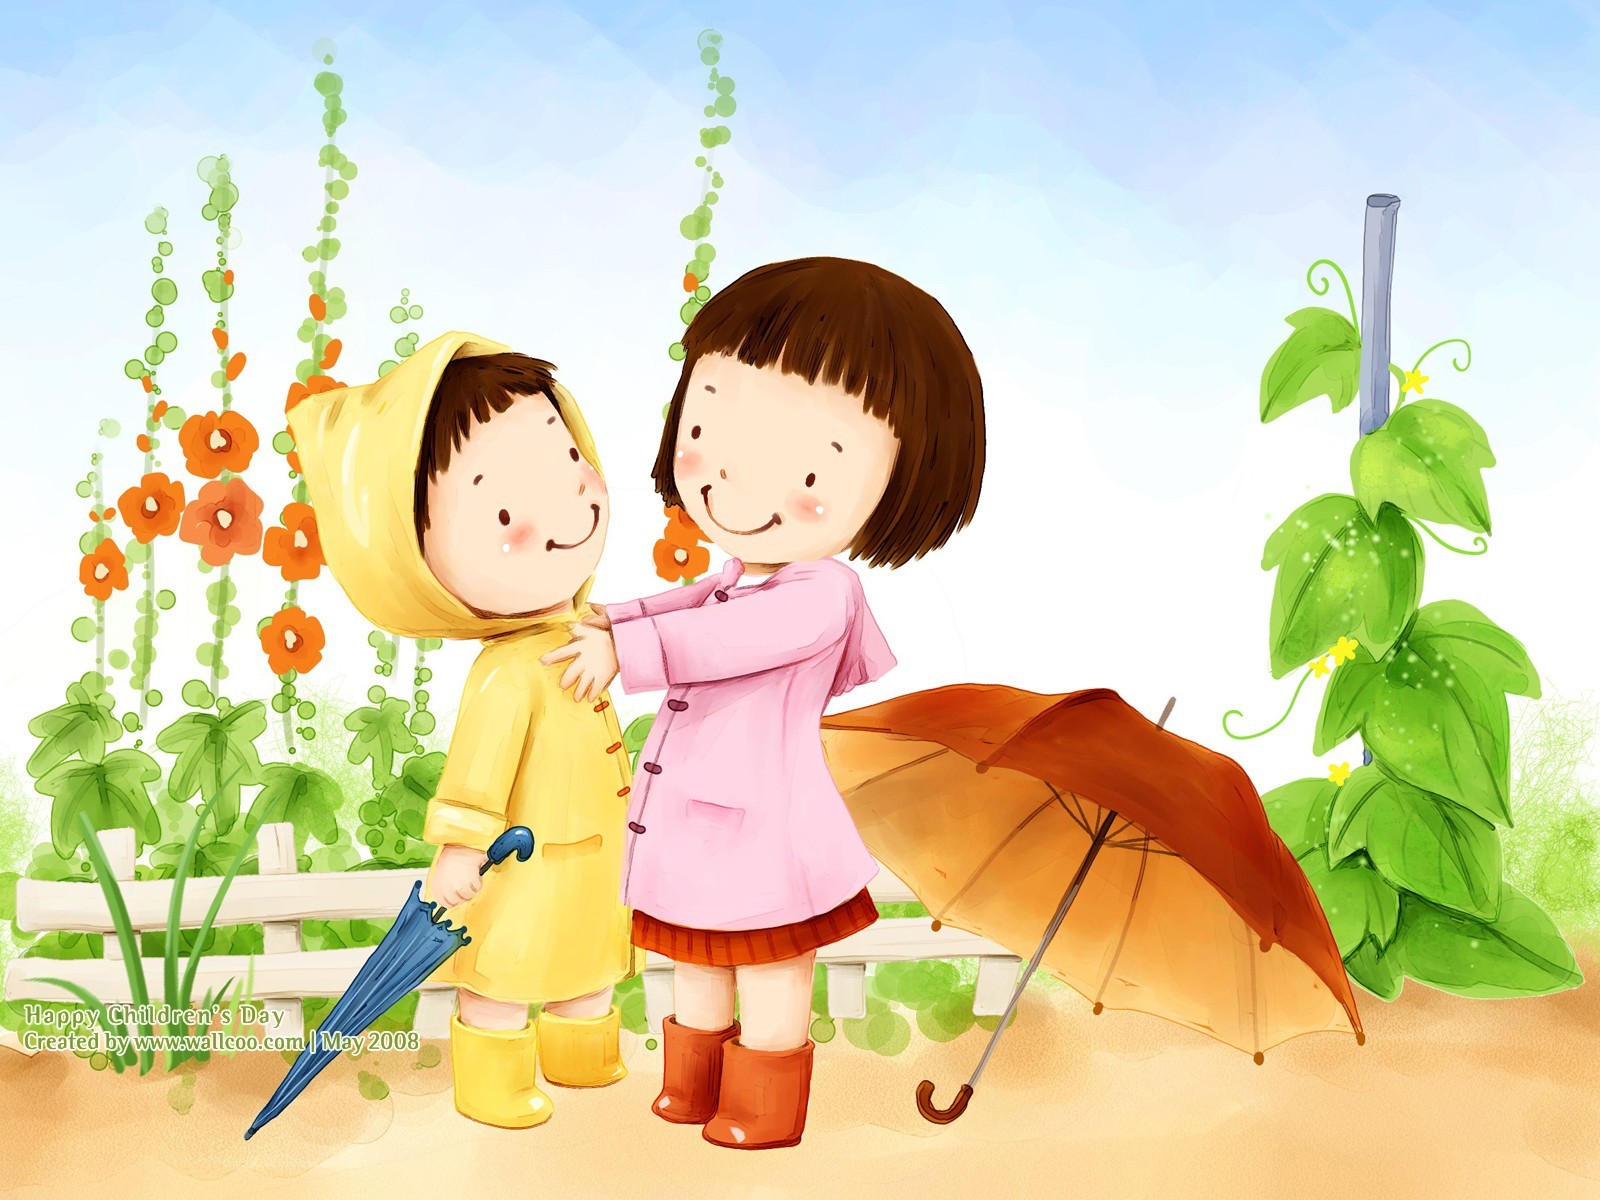 Lovely Children's Day wallpaper illustrator #30 - 1600x1200